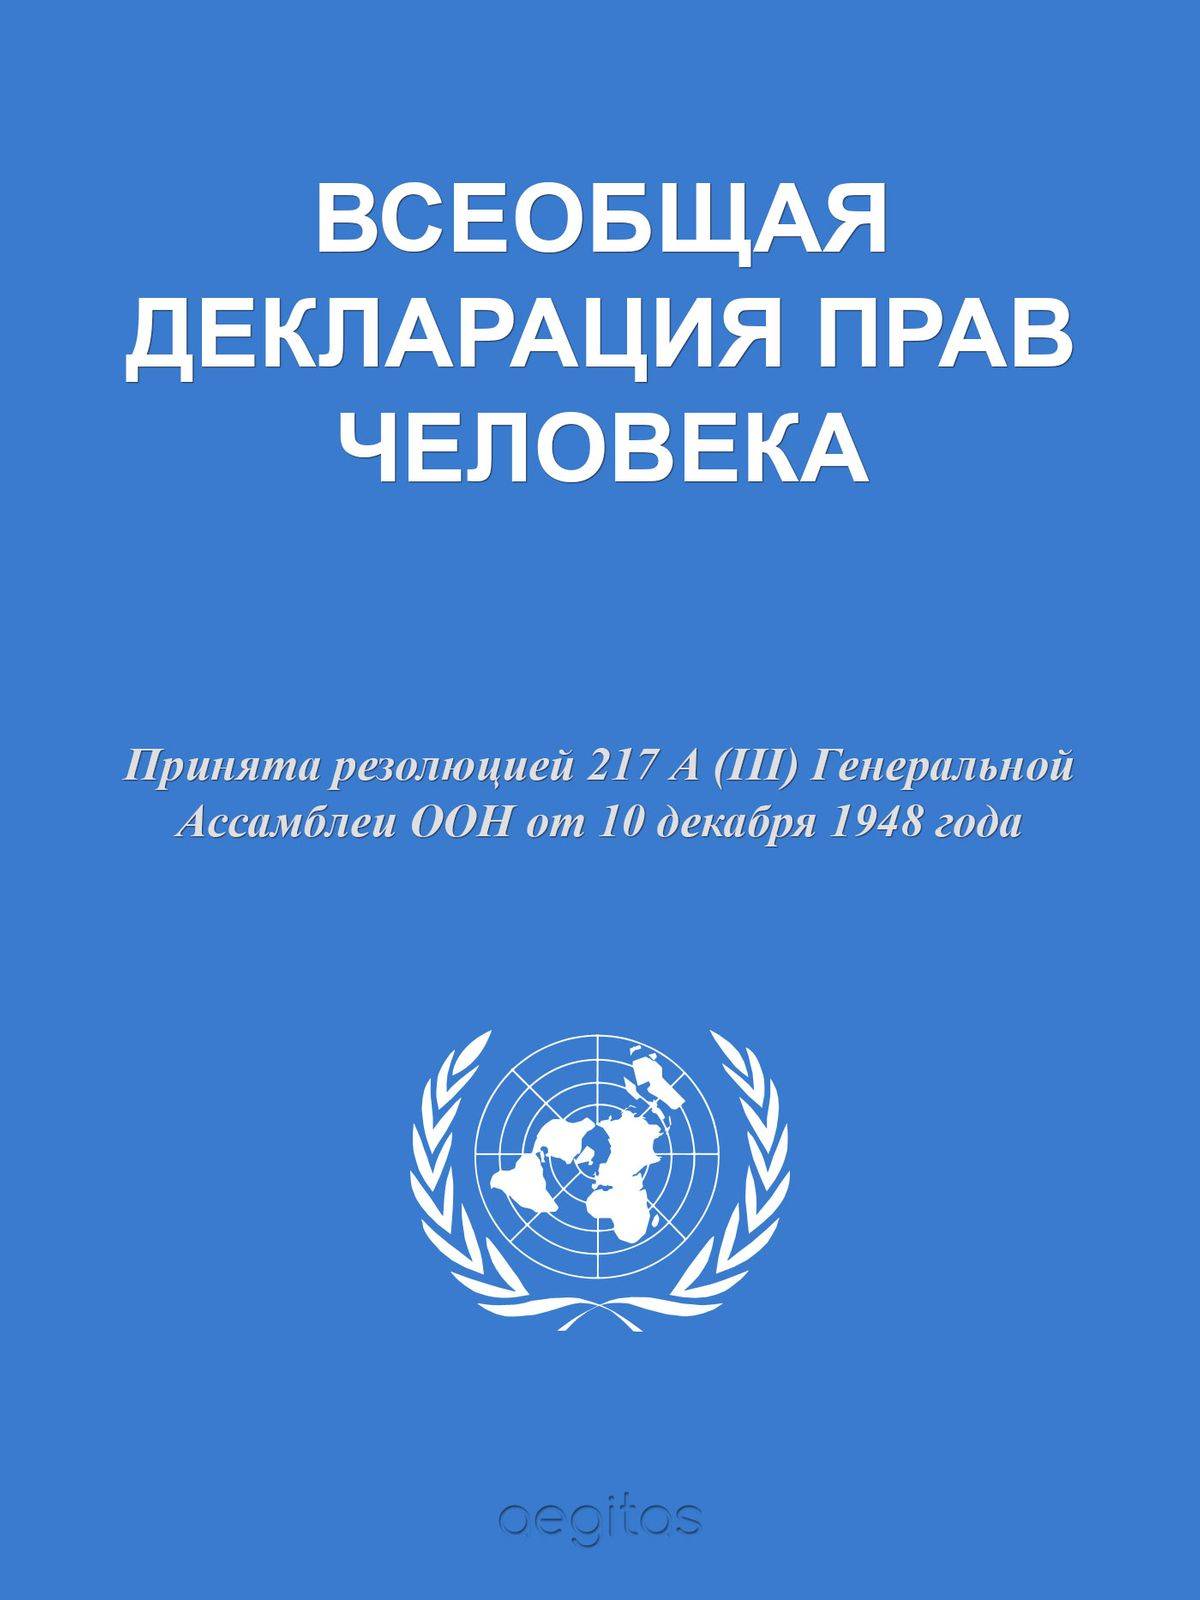 Декларация прав человека фото обложки